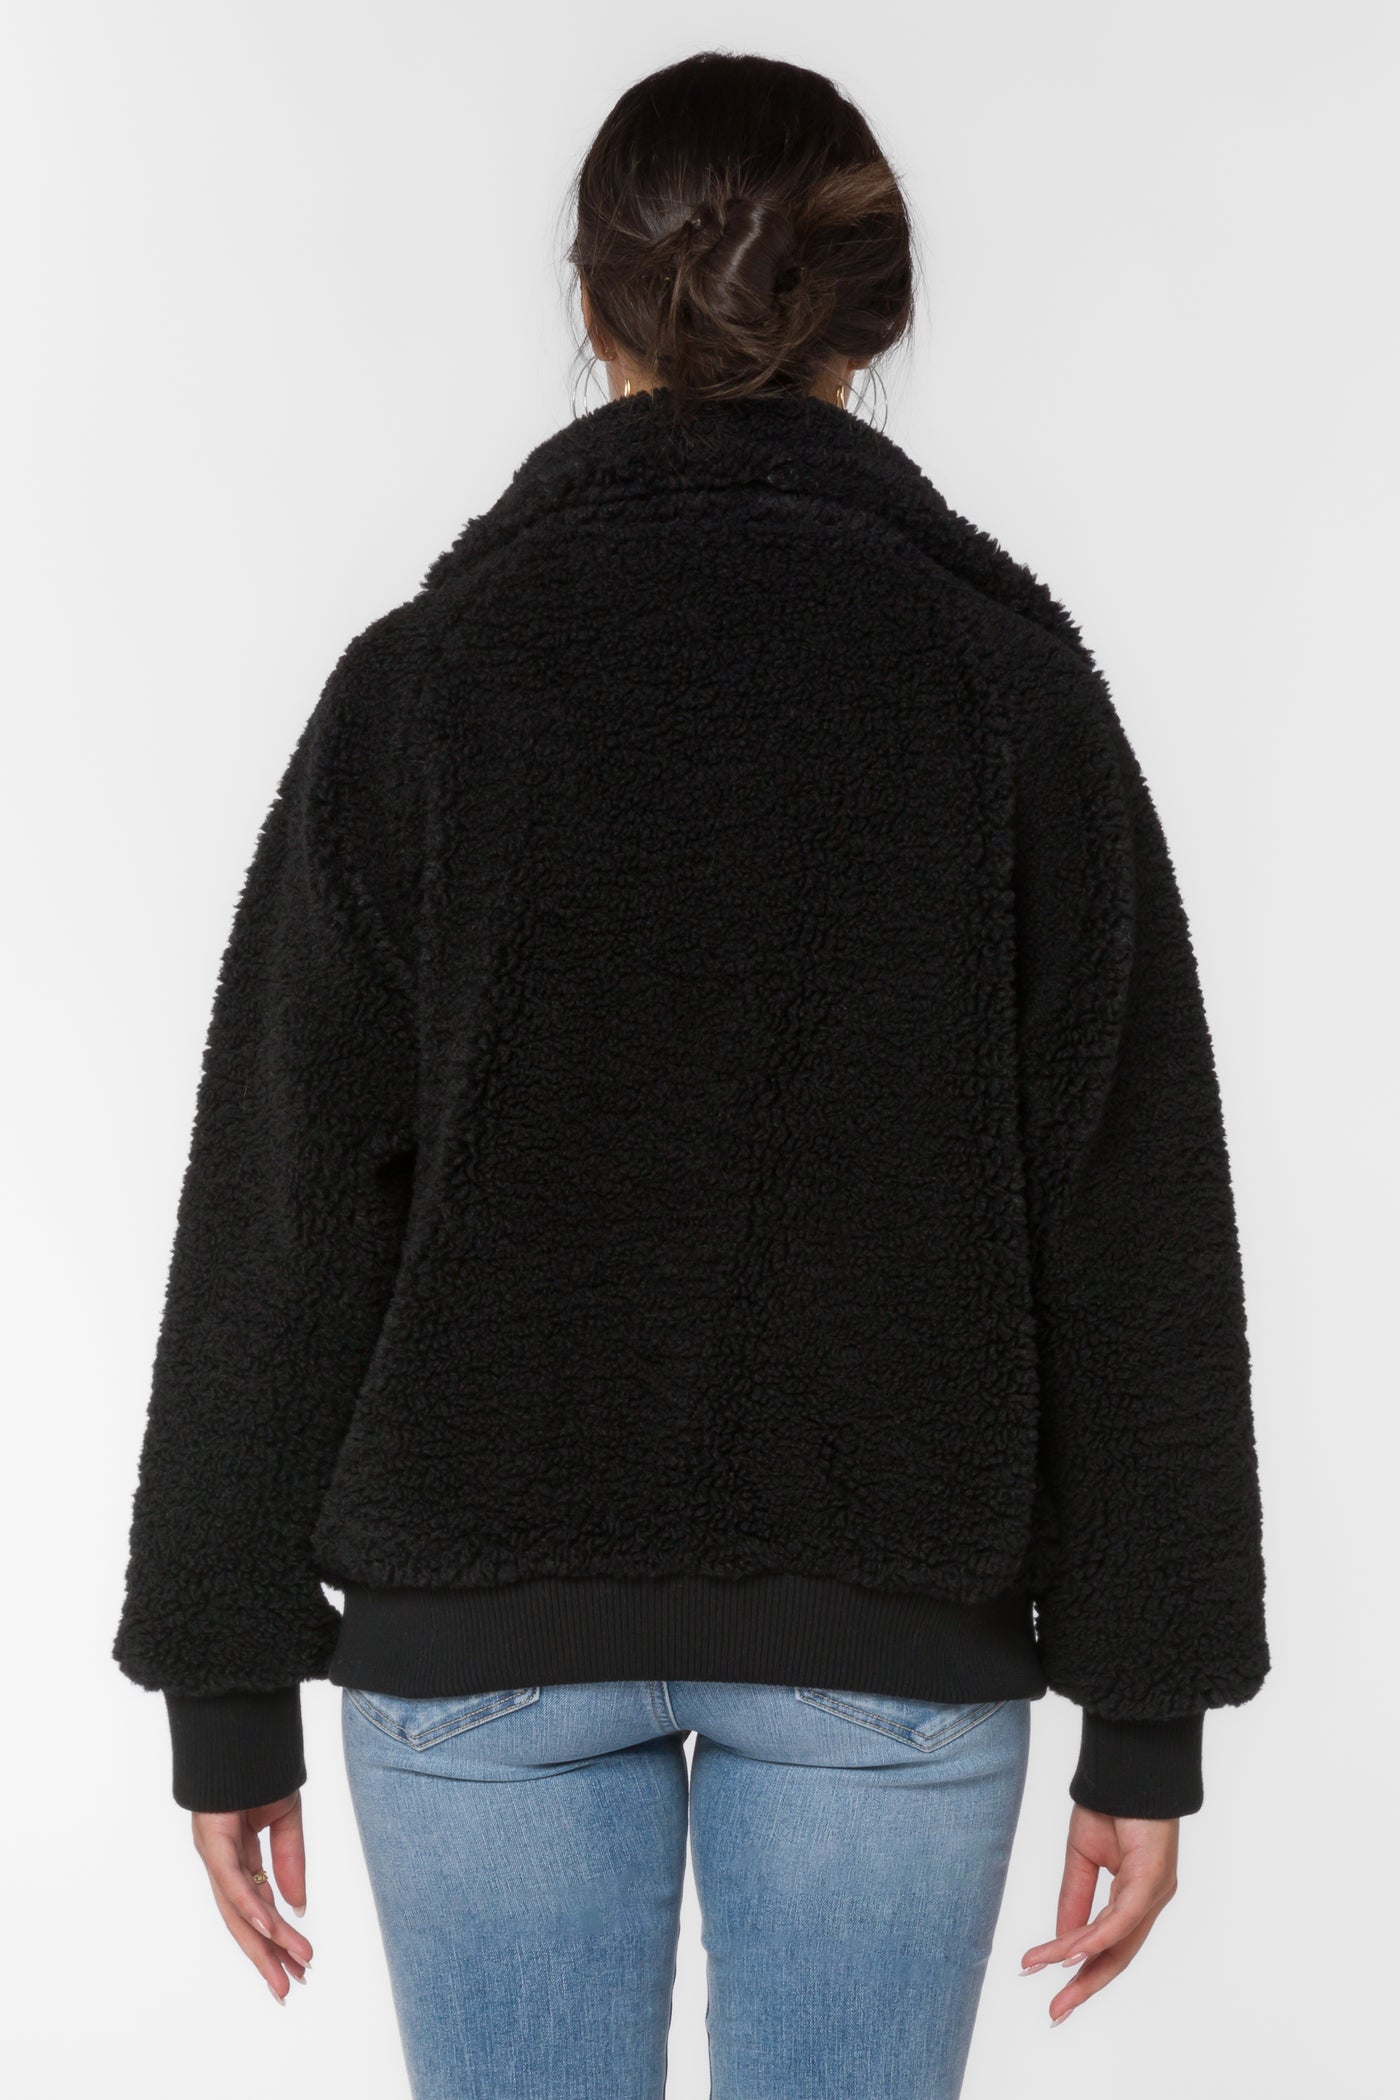 Brady Black Jacket - Jackets & Outerwear - Velvet Heart Clothing